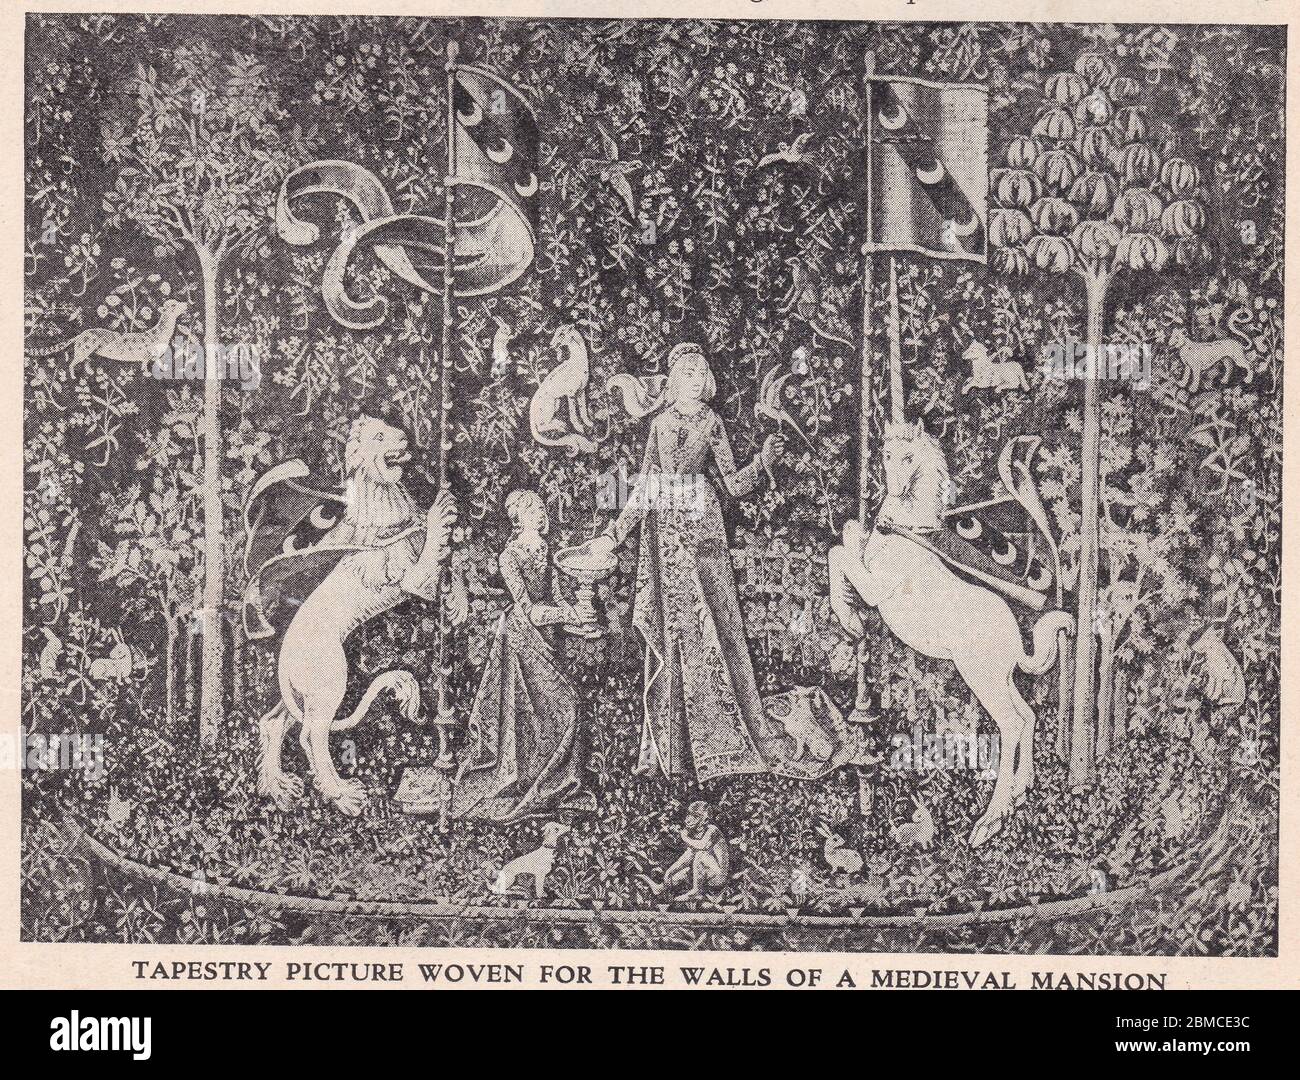 Photo de tapisserie du XVe siècle tissée pour les murs d'une demeure médiévale représentant les cinq sens au Musée Cluny de Paris. Banque D'Images